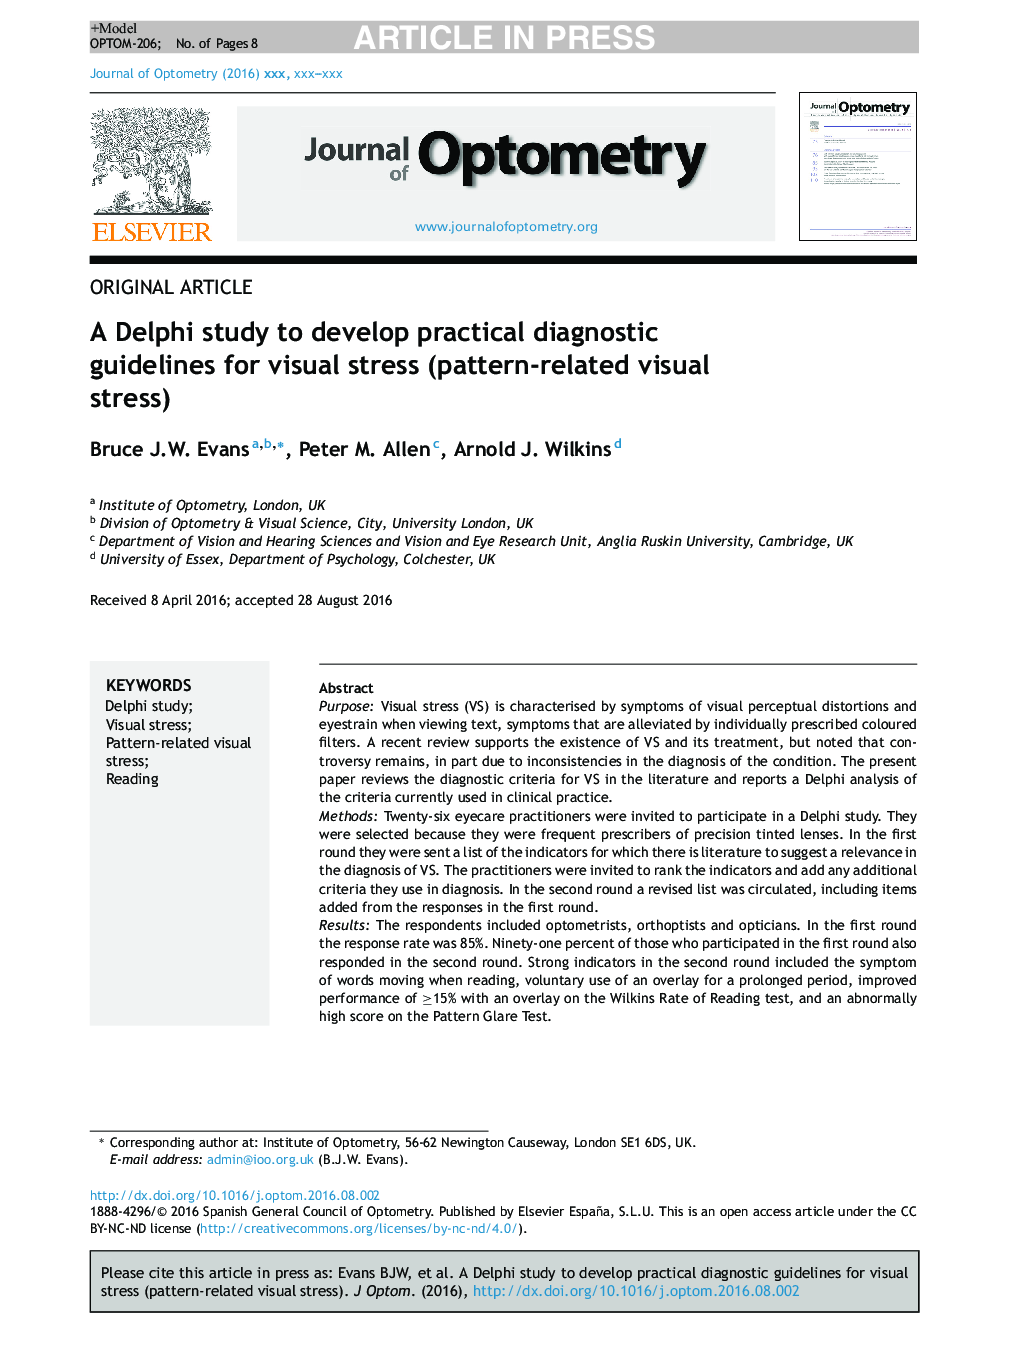 یک مطالعه دلفی برای توسعه دستورالعمل های تشخیصی عملی برای استرس بصری (استرس بصری مرتبط با الگو) 